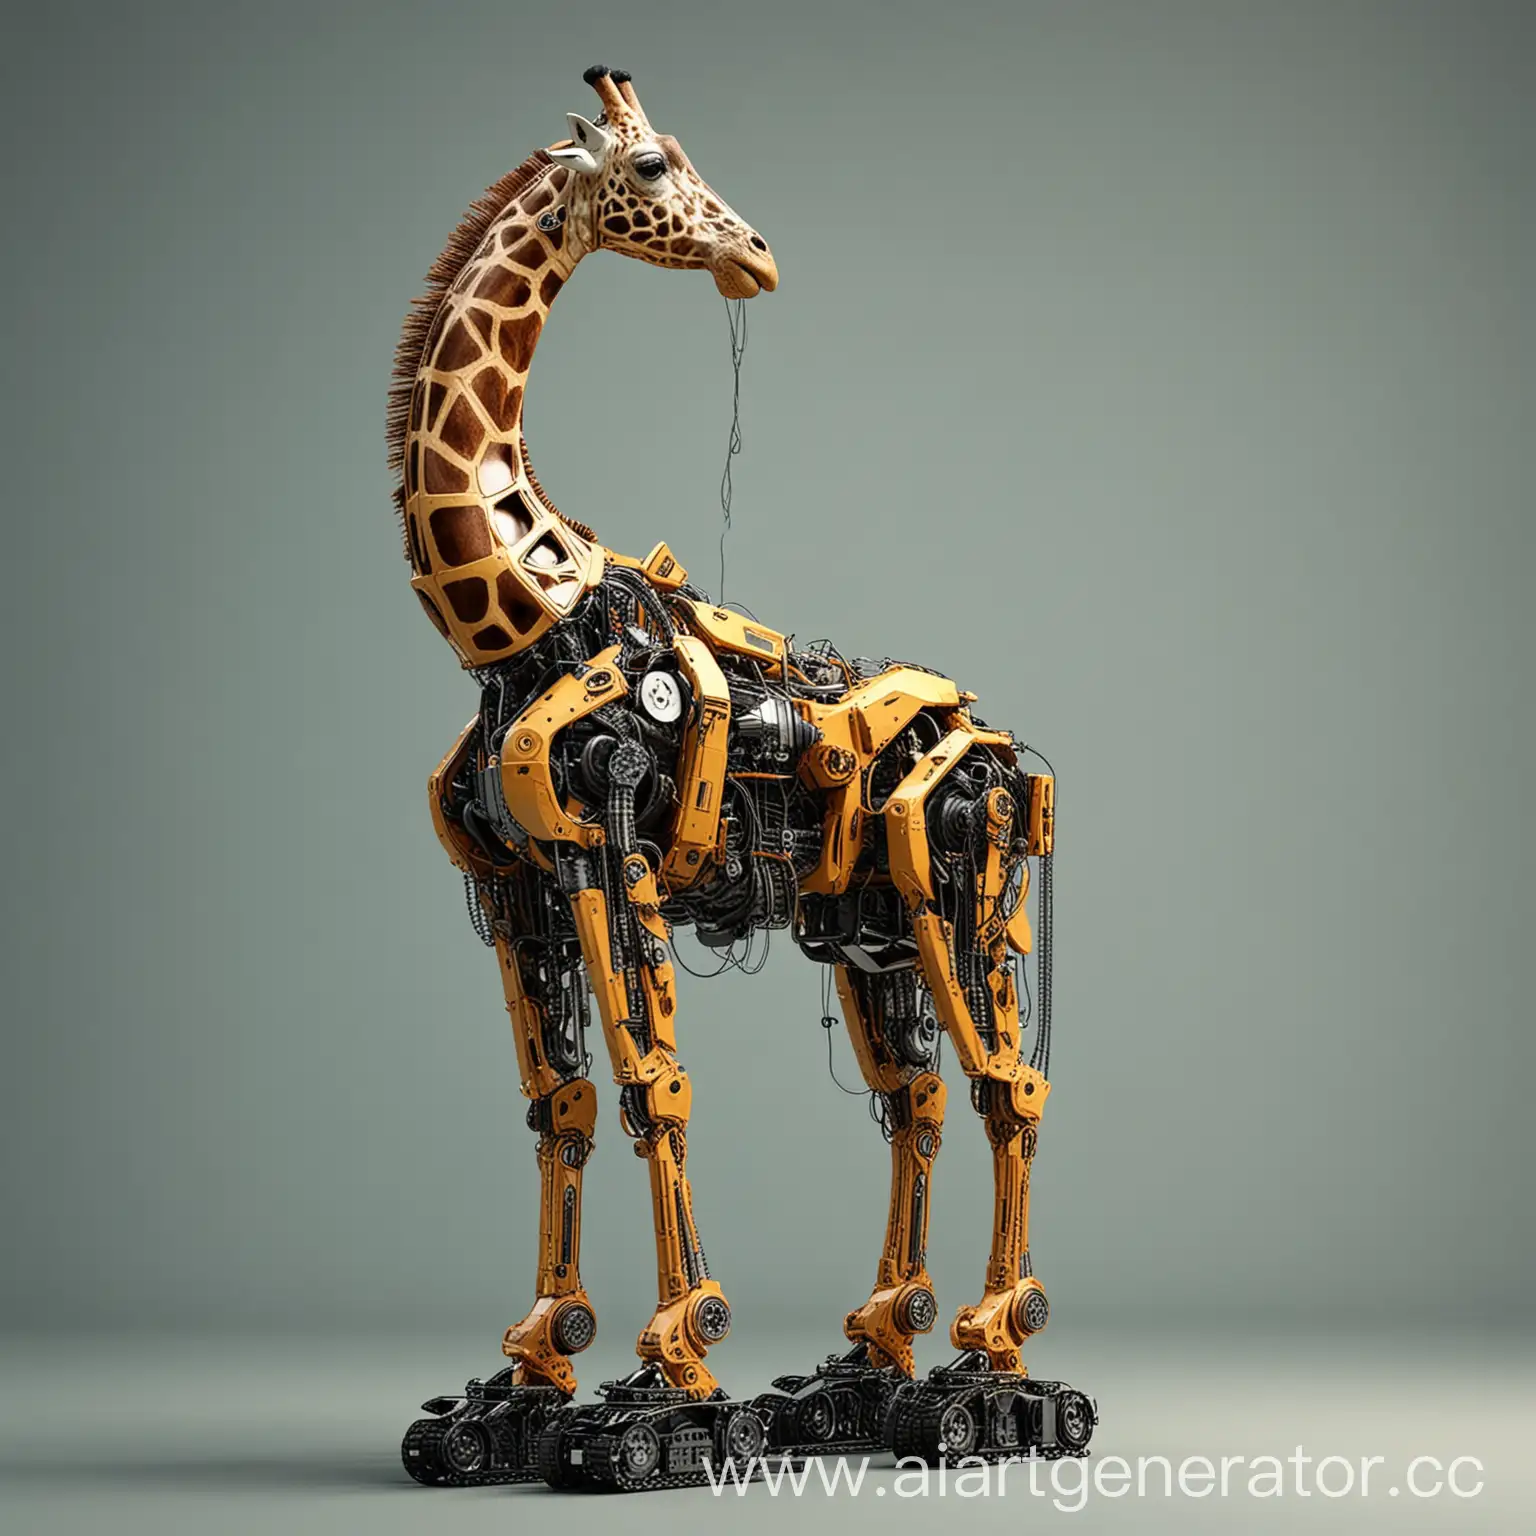 жирафомашина, как будто трансформер
